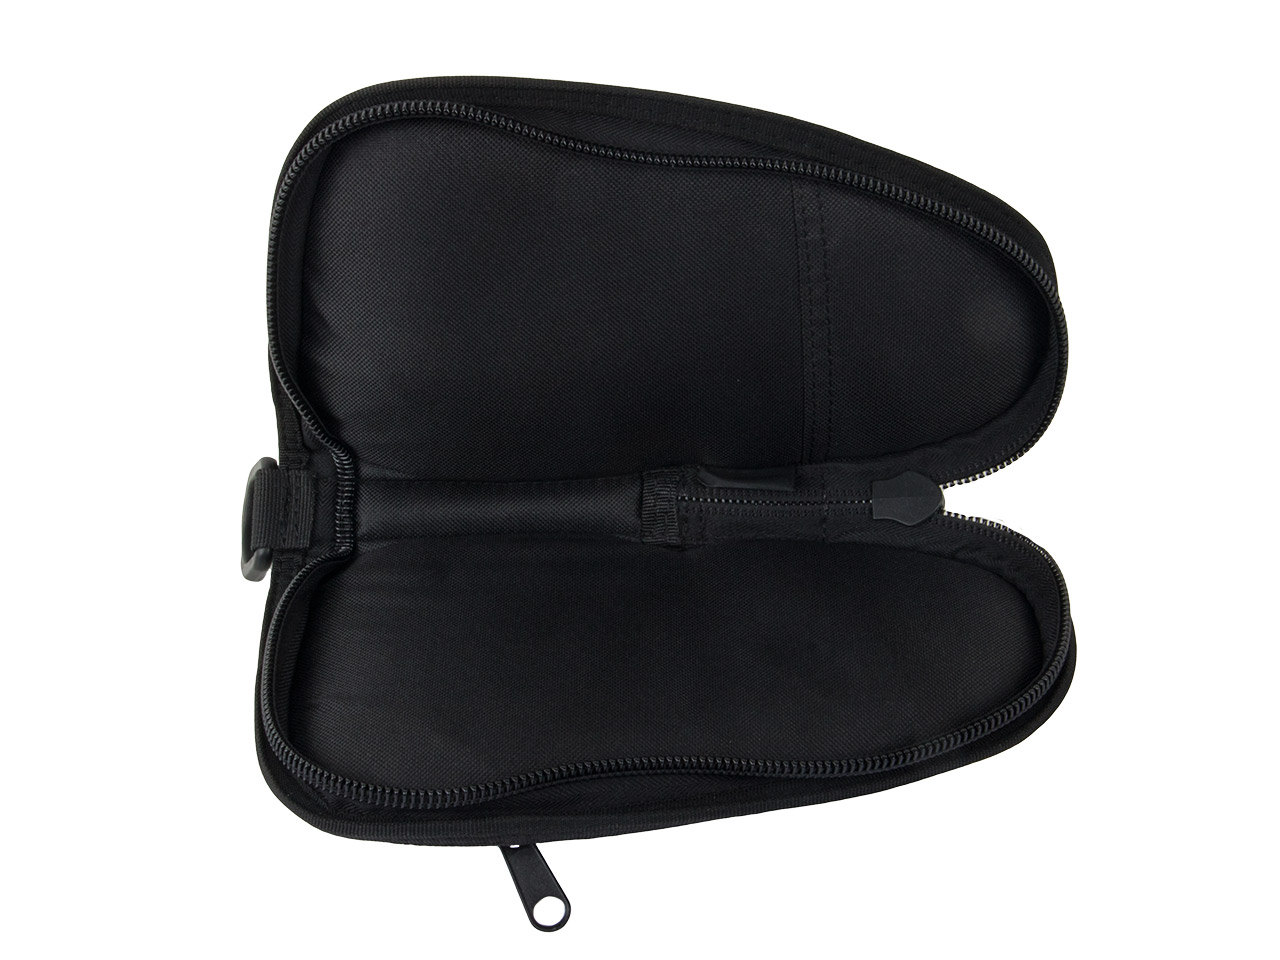 Pistolenfutteral Pistolentasche Transporttasche Coptex 21 x 11 cm abschließbar Außentasche für kleine Pistolen oder Revolver schwarz